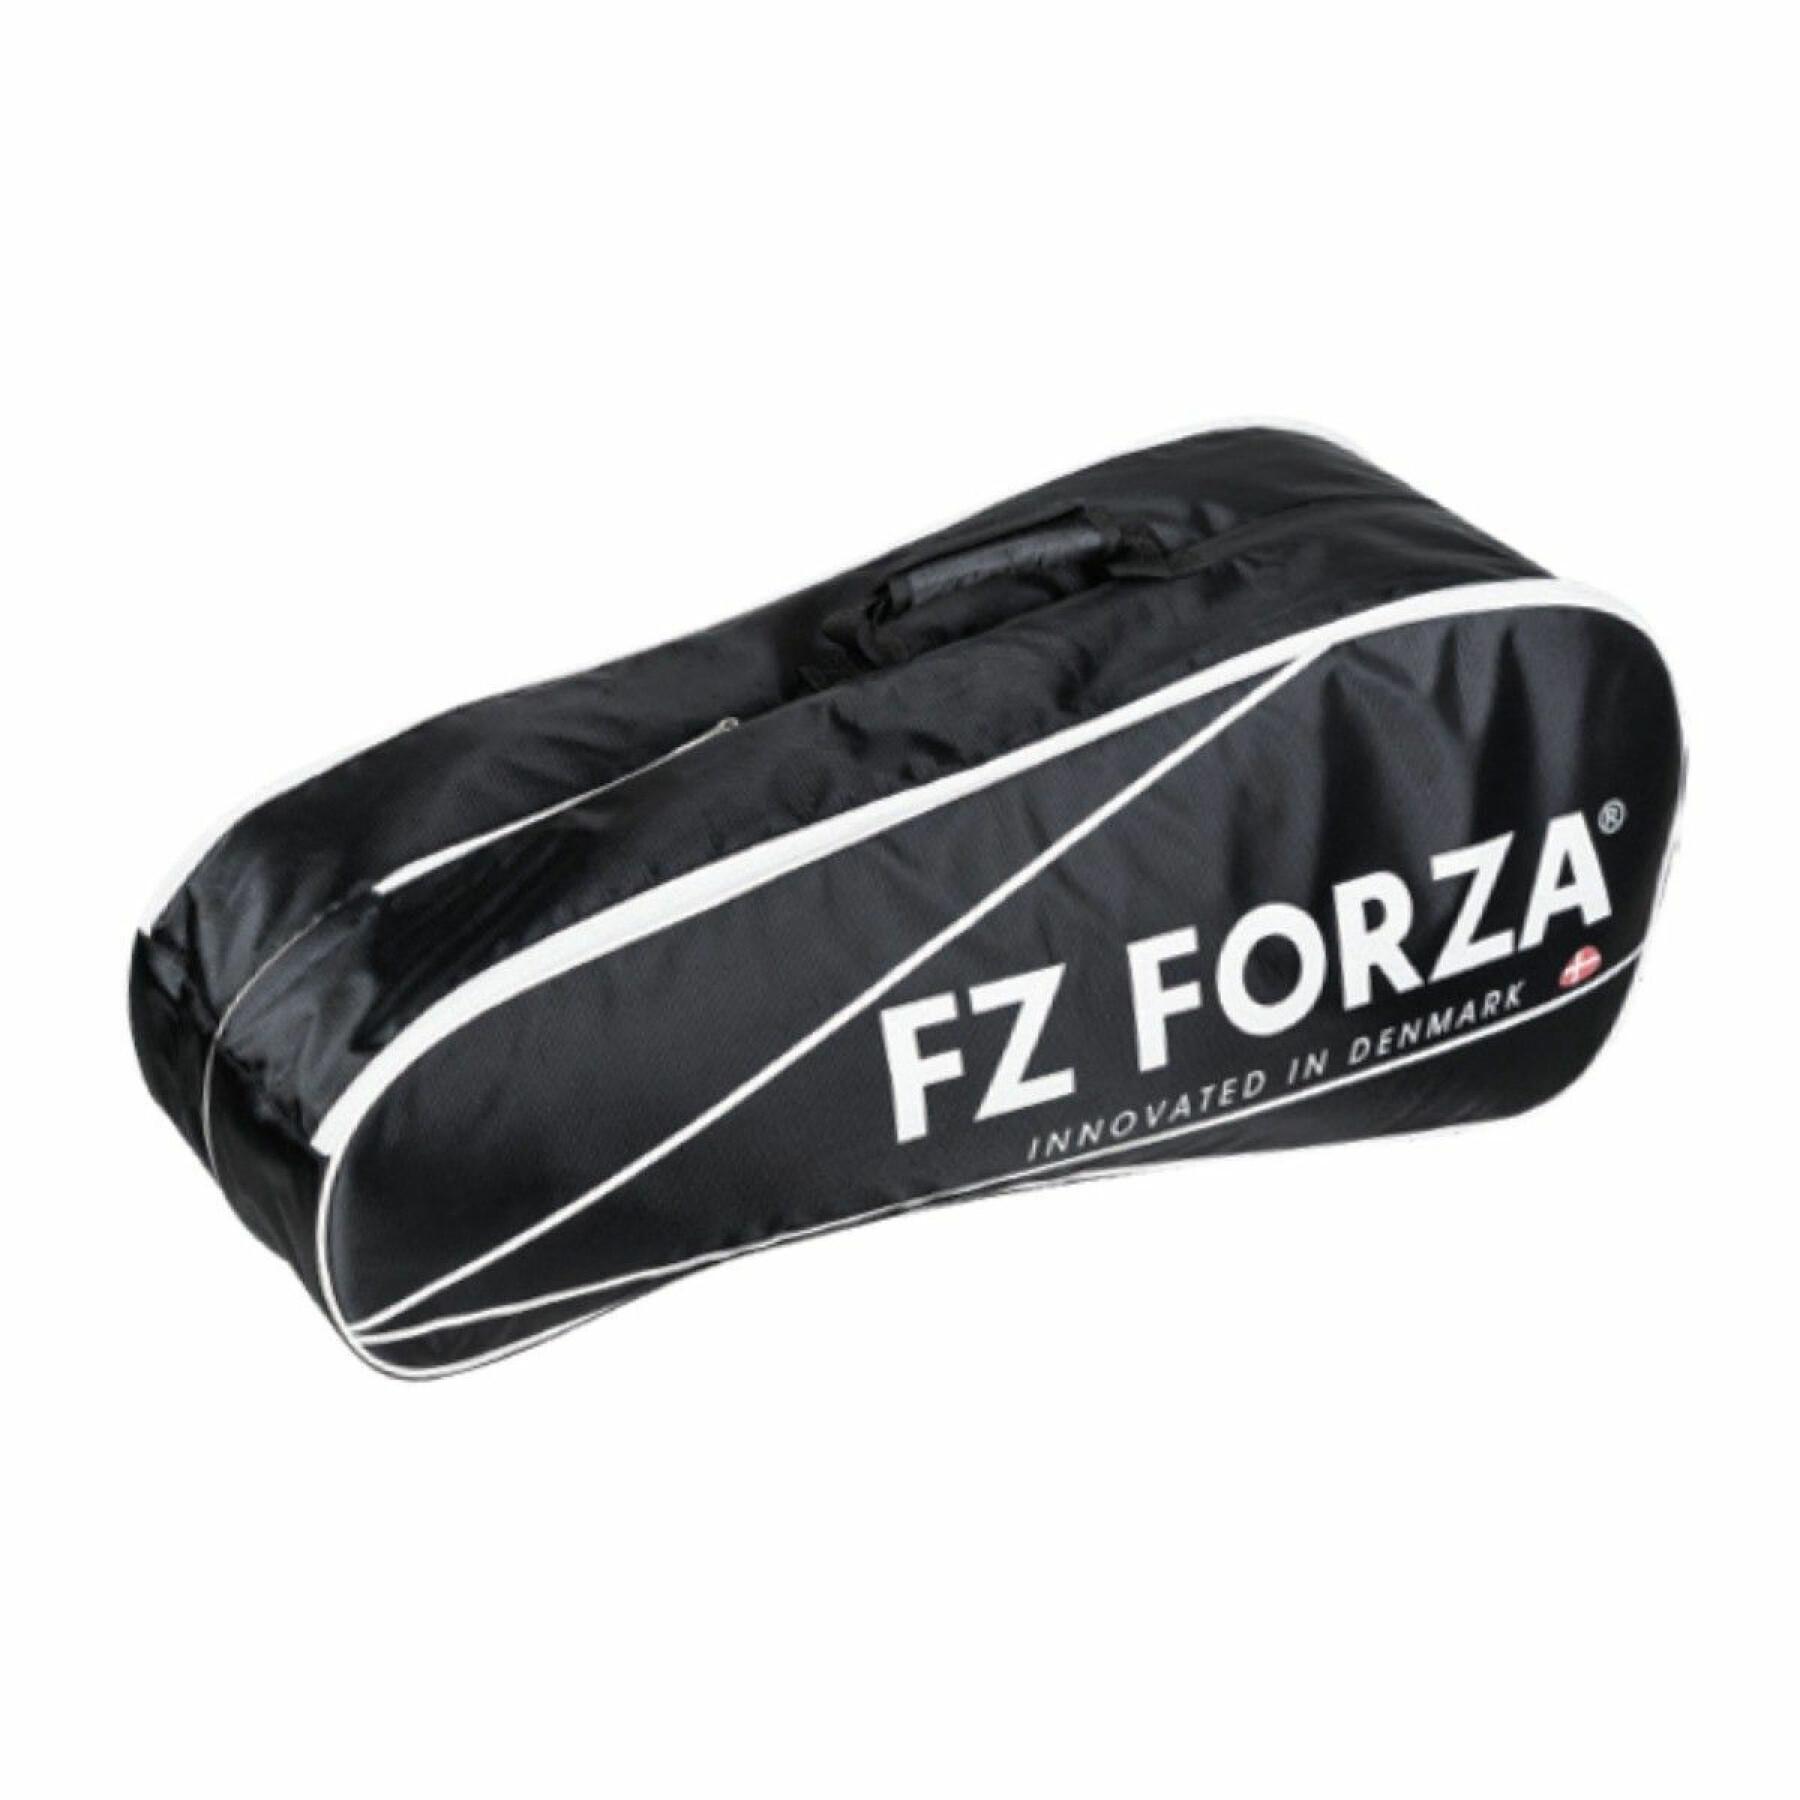 Väska med badmintonracketar FZ Forza Martak